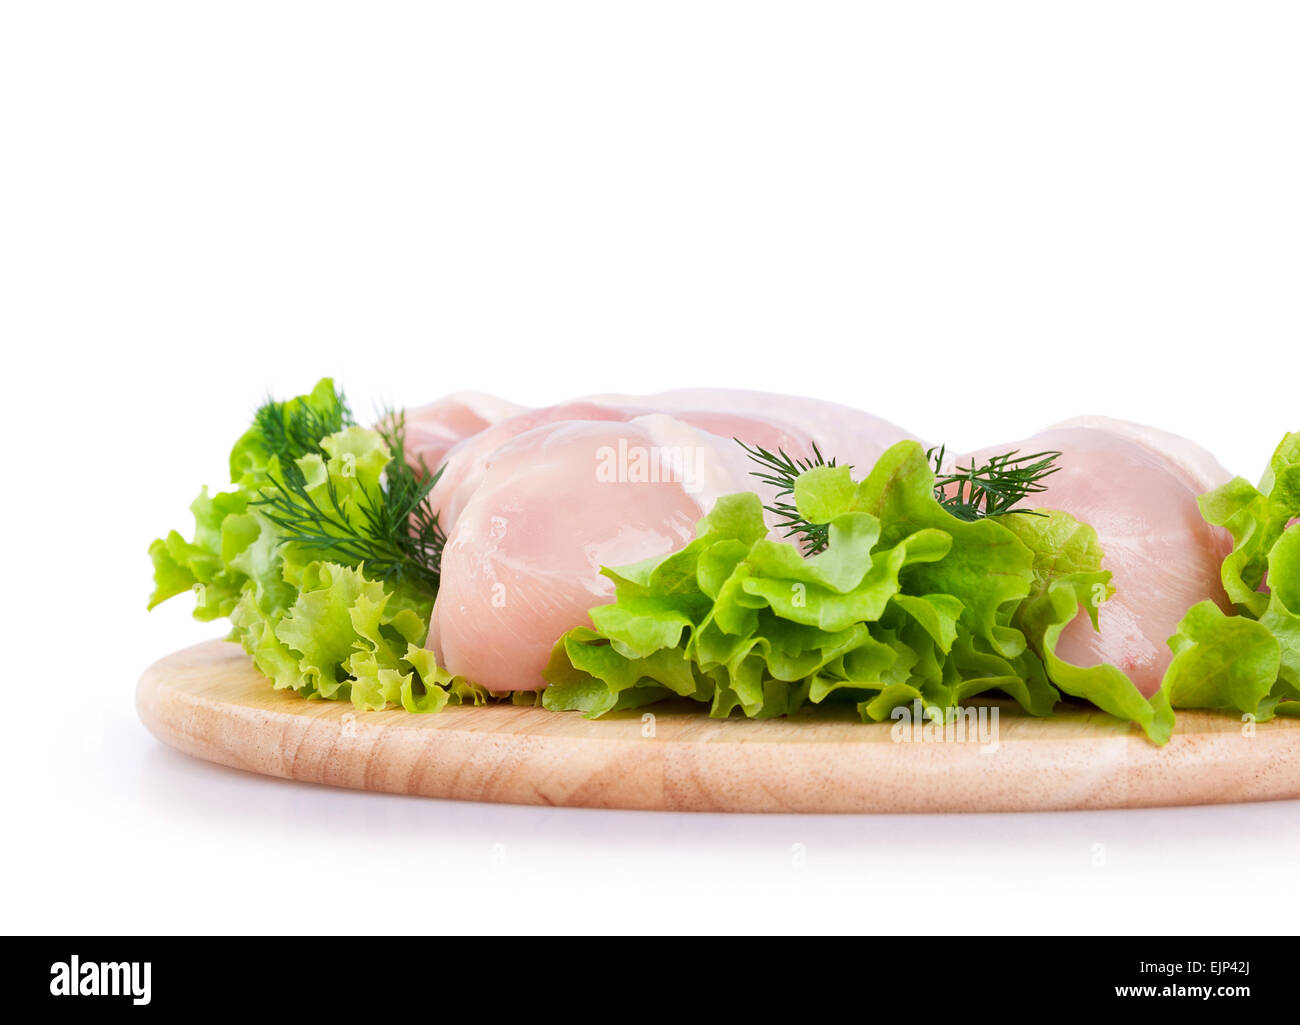 La viande de poulet crue avec une salade verte sur une planche en bois Banque D'Images